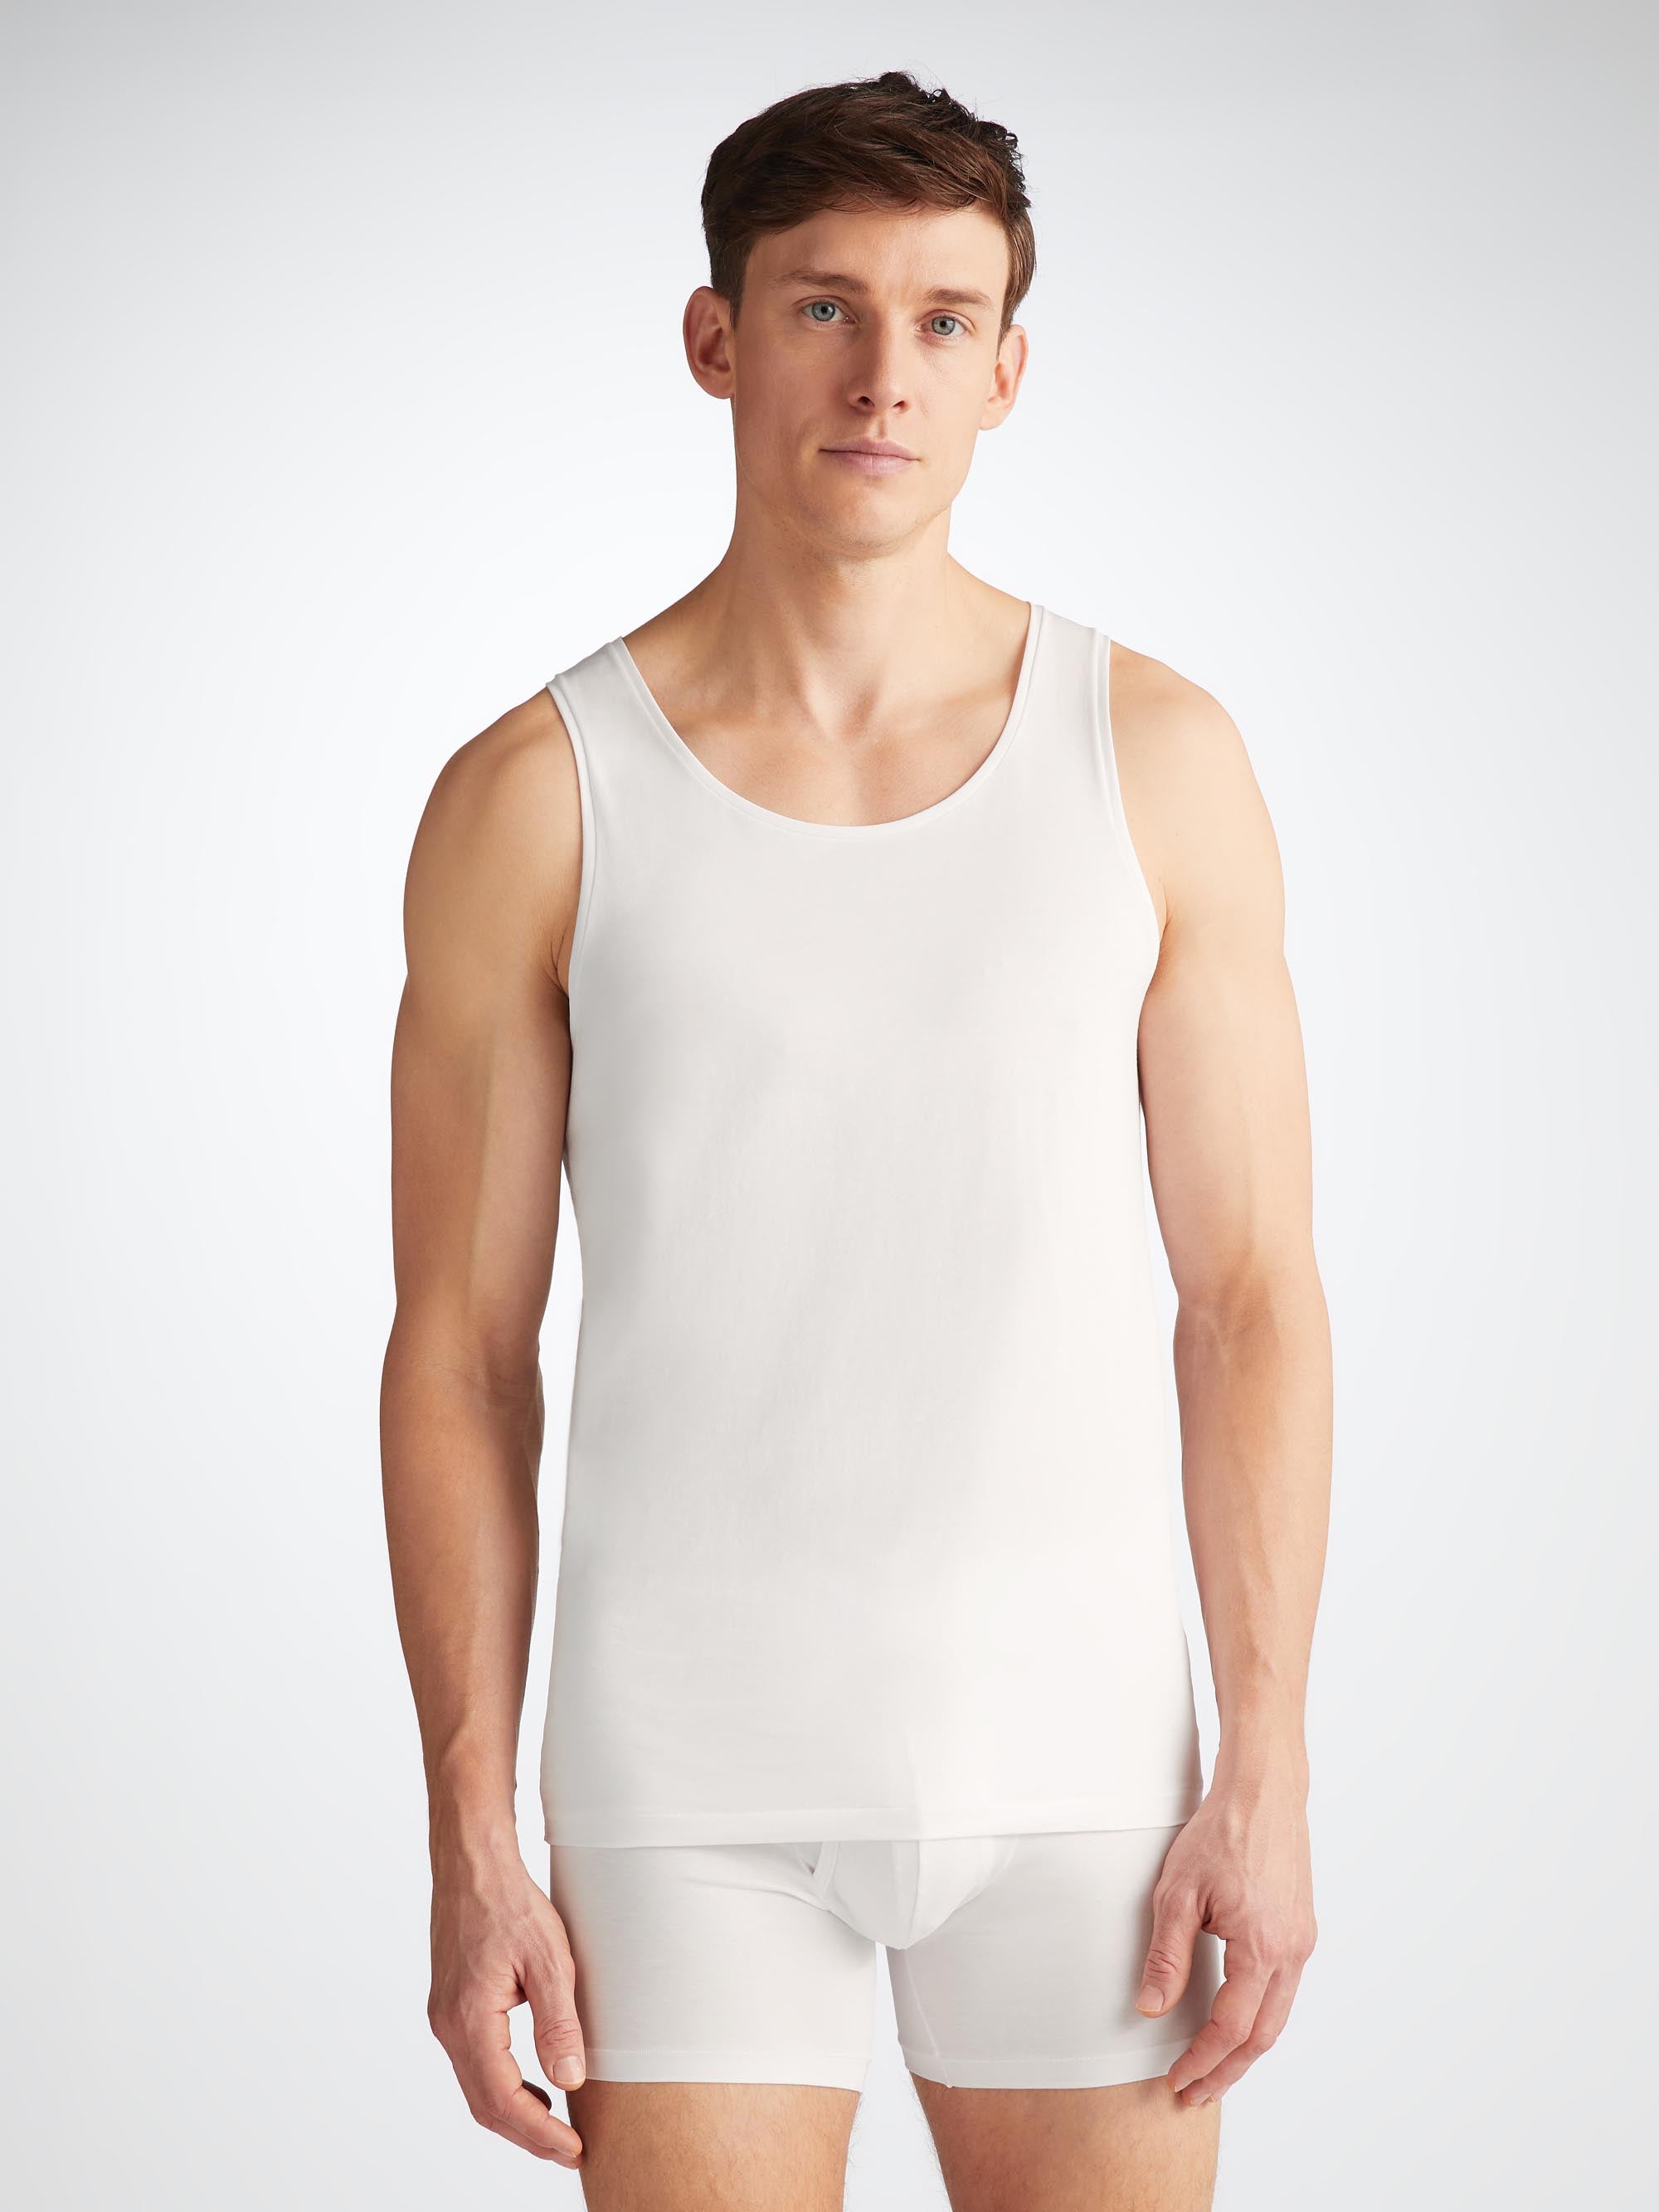 Men's Underwear Vest Jack Pima Cotton Stretch White